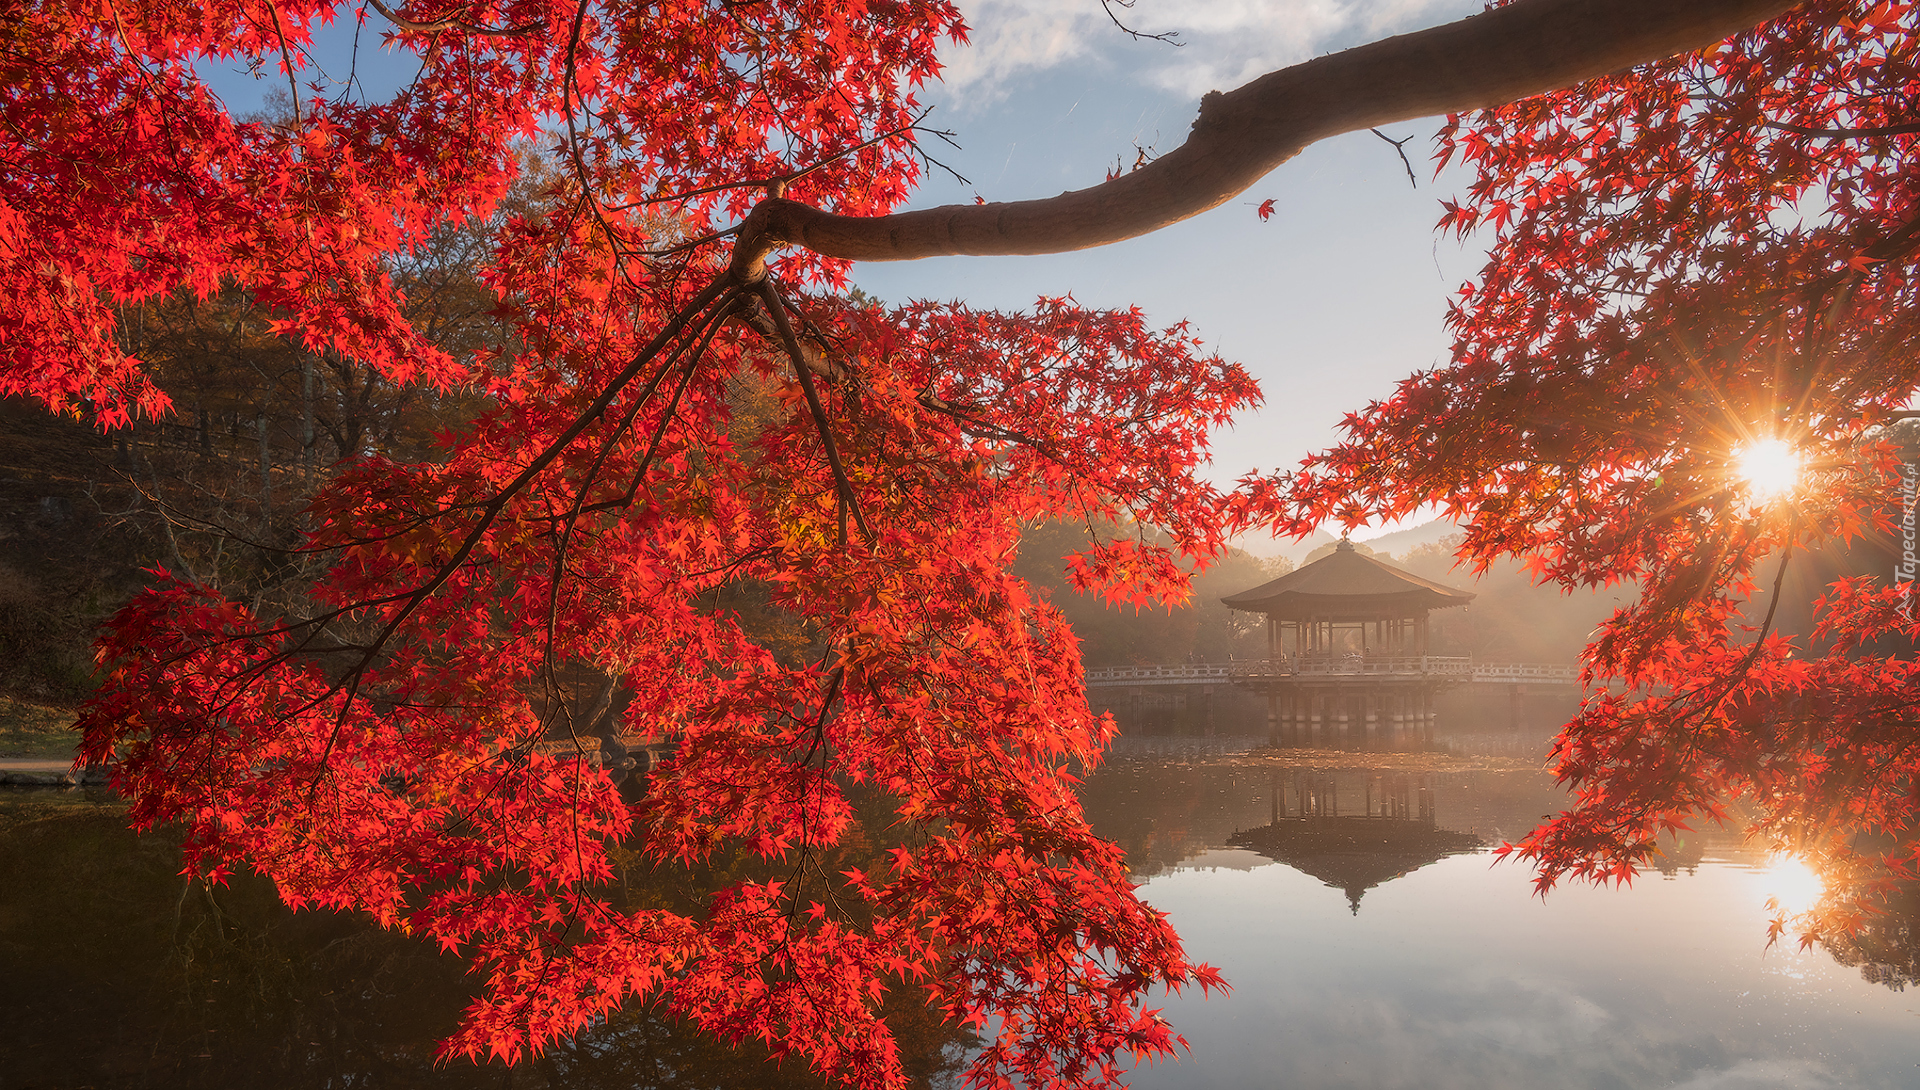 Jesień, Staw, Sagiike, Drzewo, Gałęzie, Czerwone, Liście, Altana, Pawilon Ukimido, Promienie słońca, Nara Park, Nara, Japonia